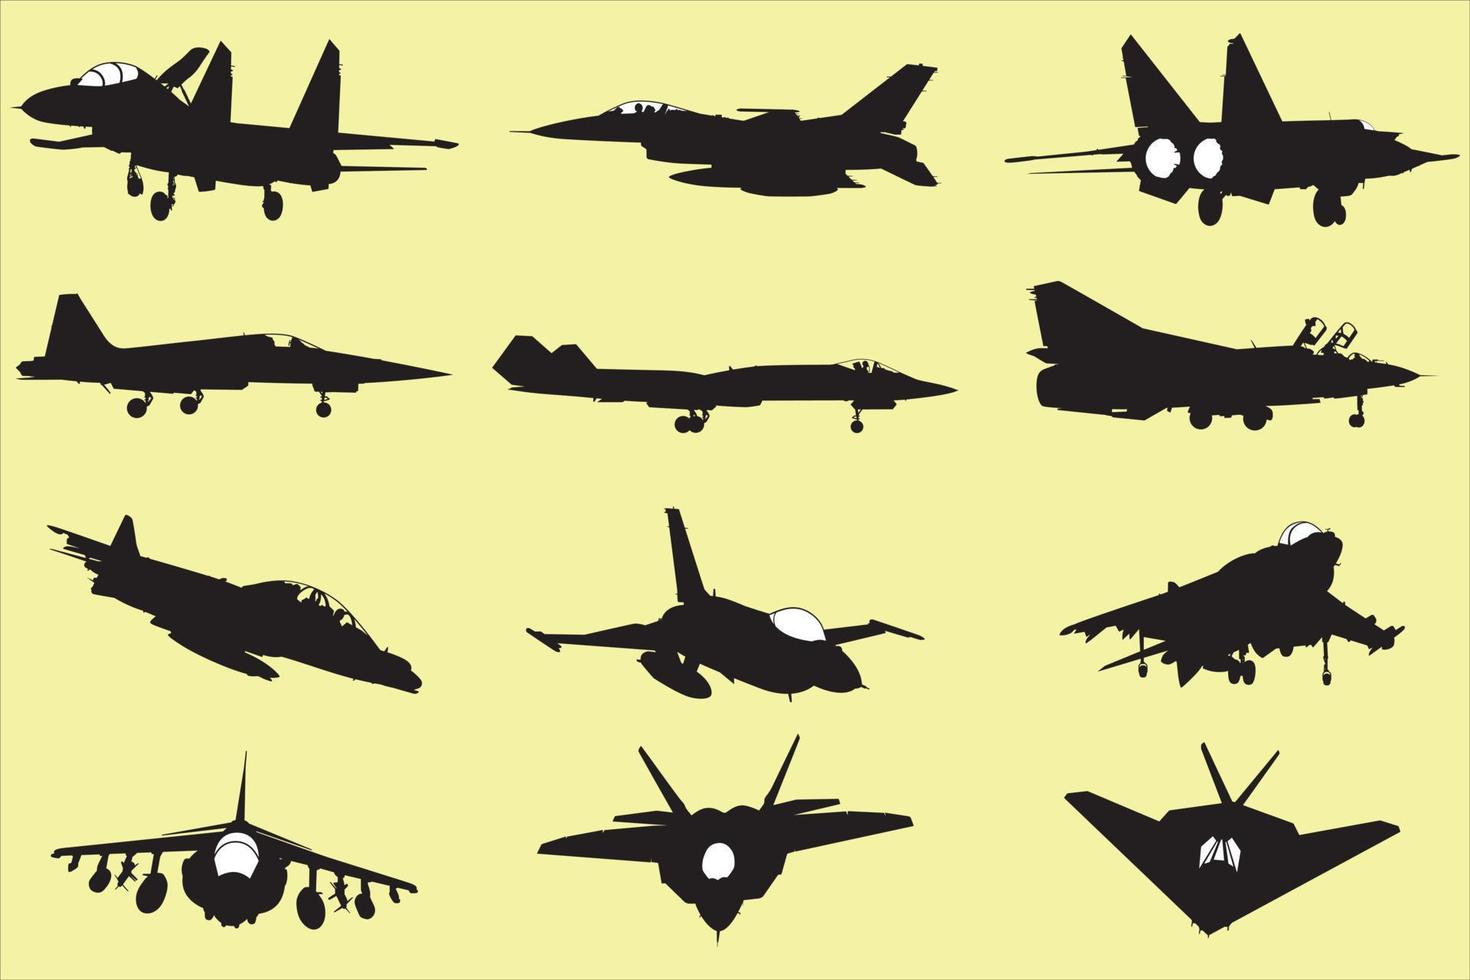 divers soorten van oorlog gevecht apparatuur, vliegtuigen, vechter jets, modern vliegtuig vector